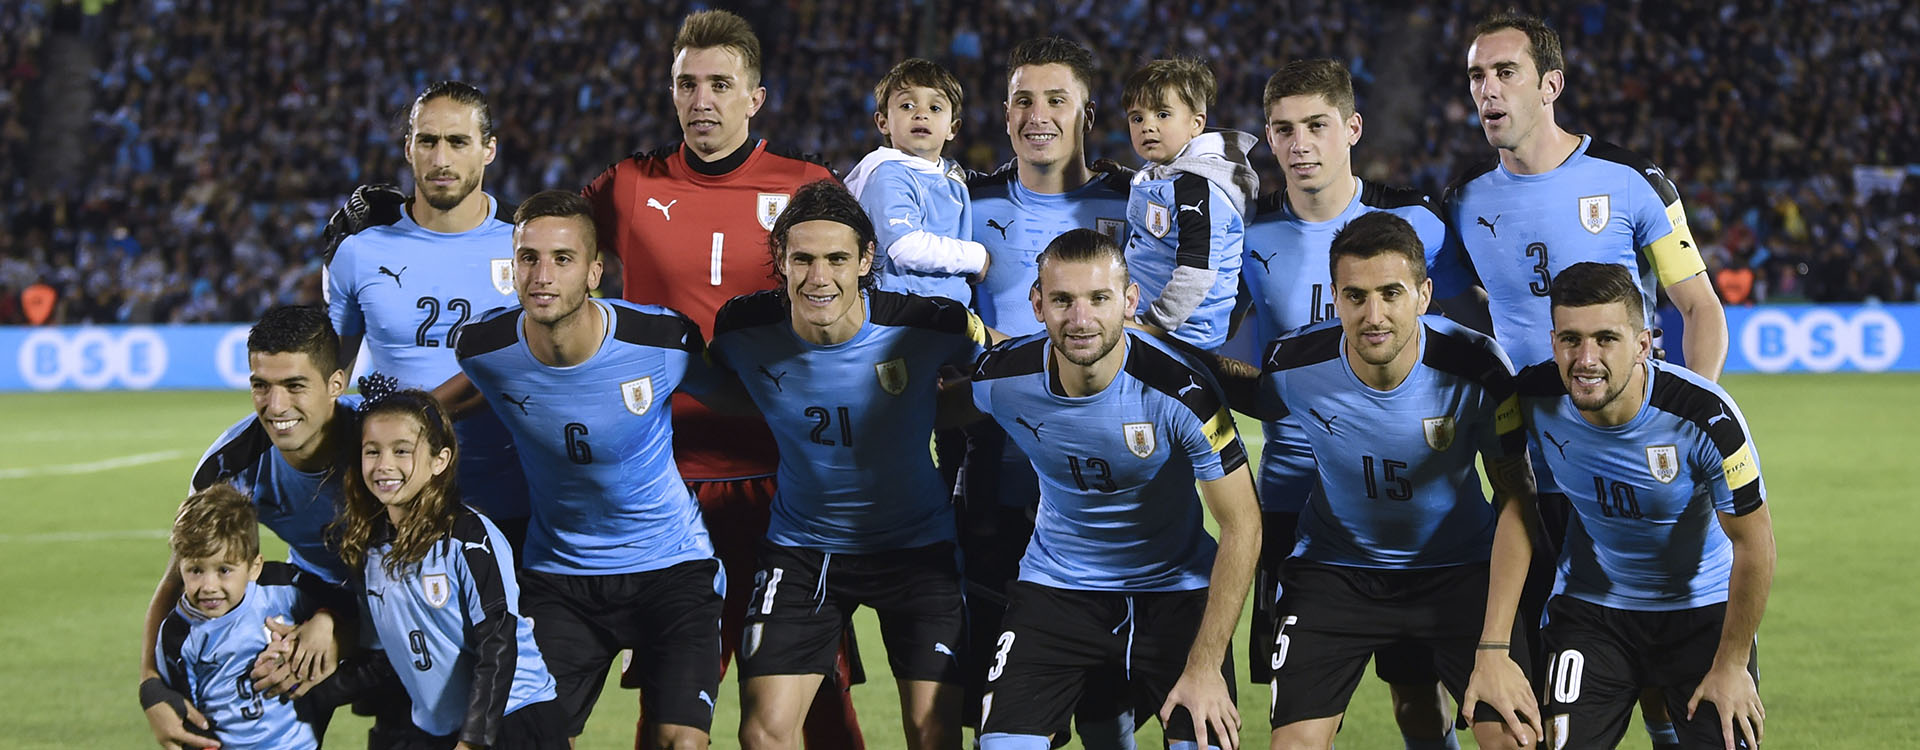 Uruguay: El fútbol profesional más pobre, Noticias